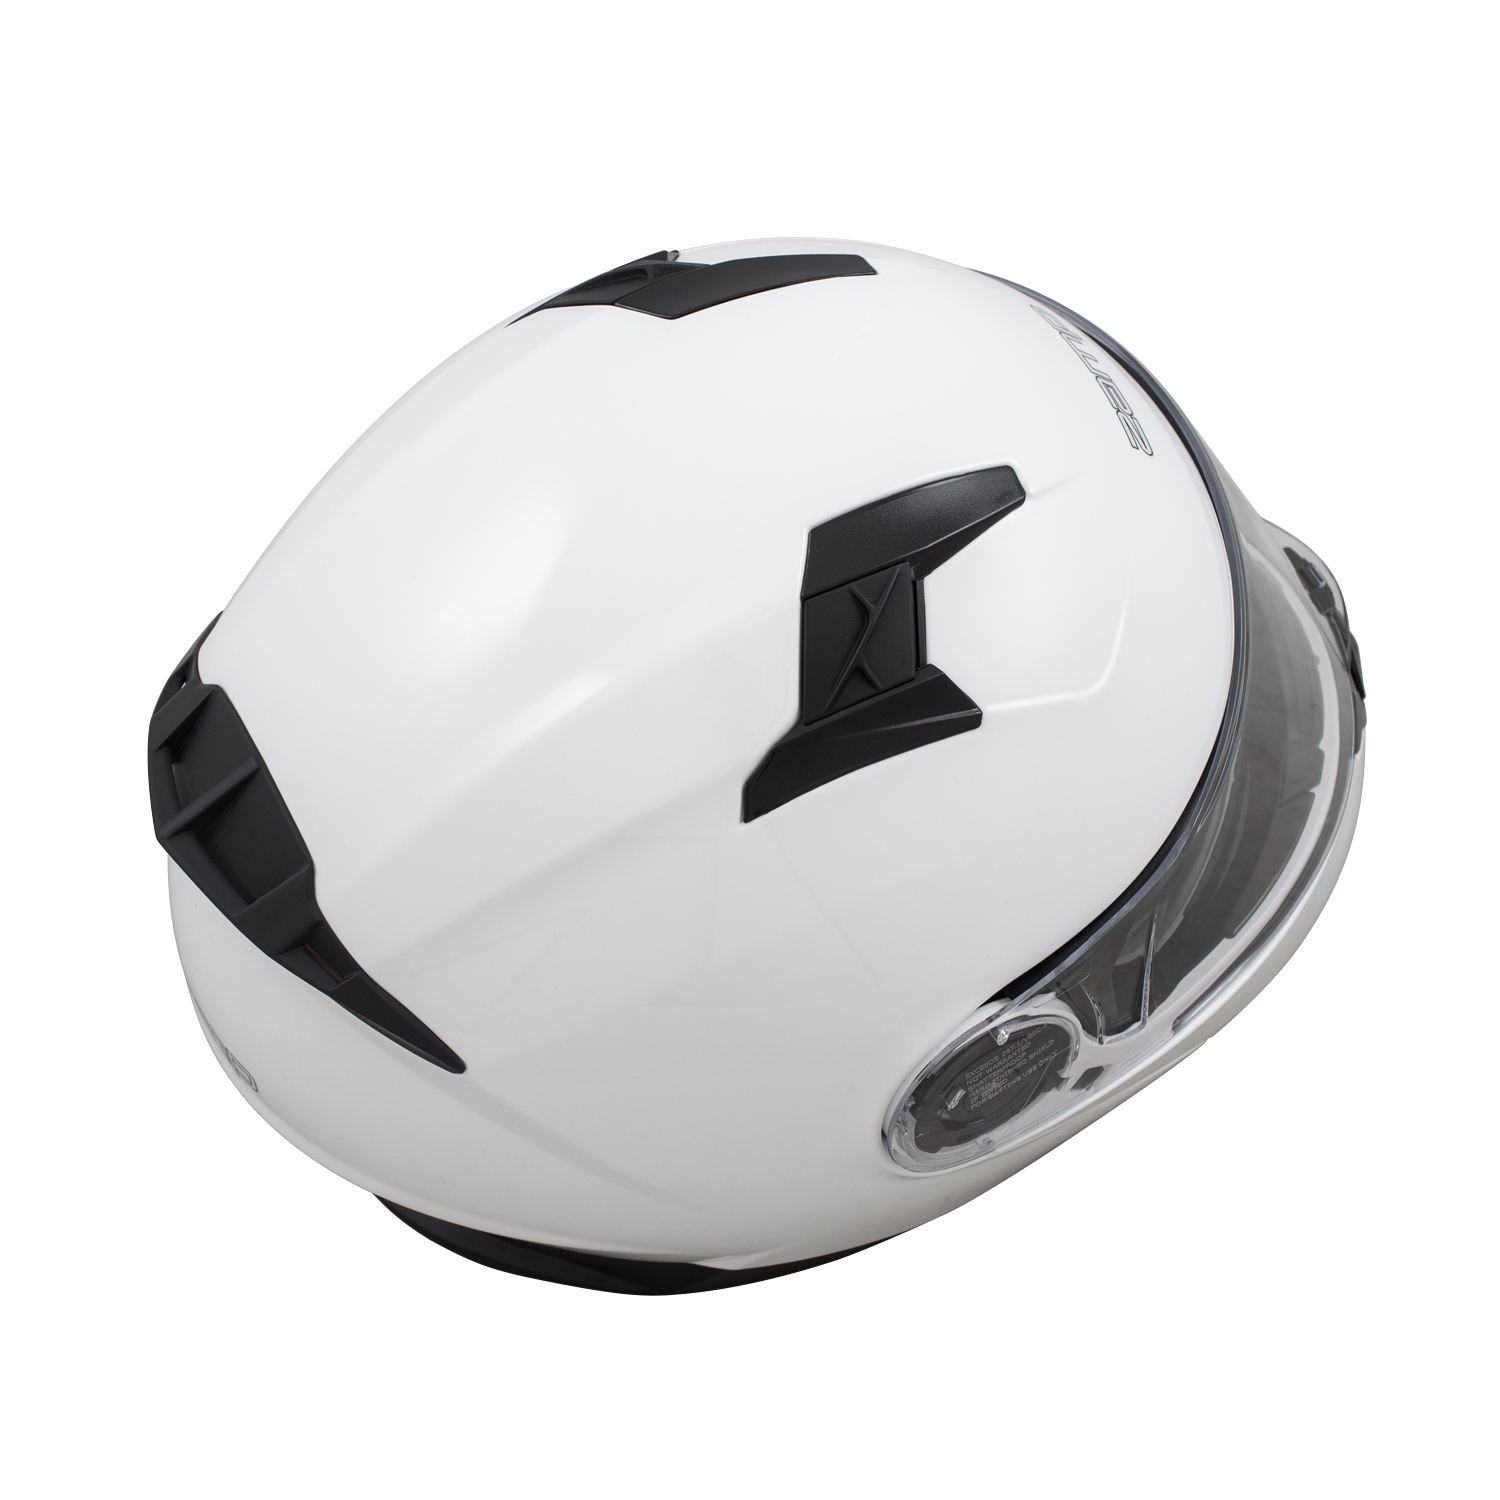 FL-4 Gloss White Helmet